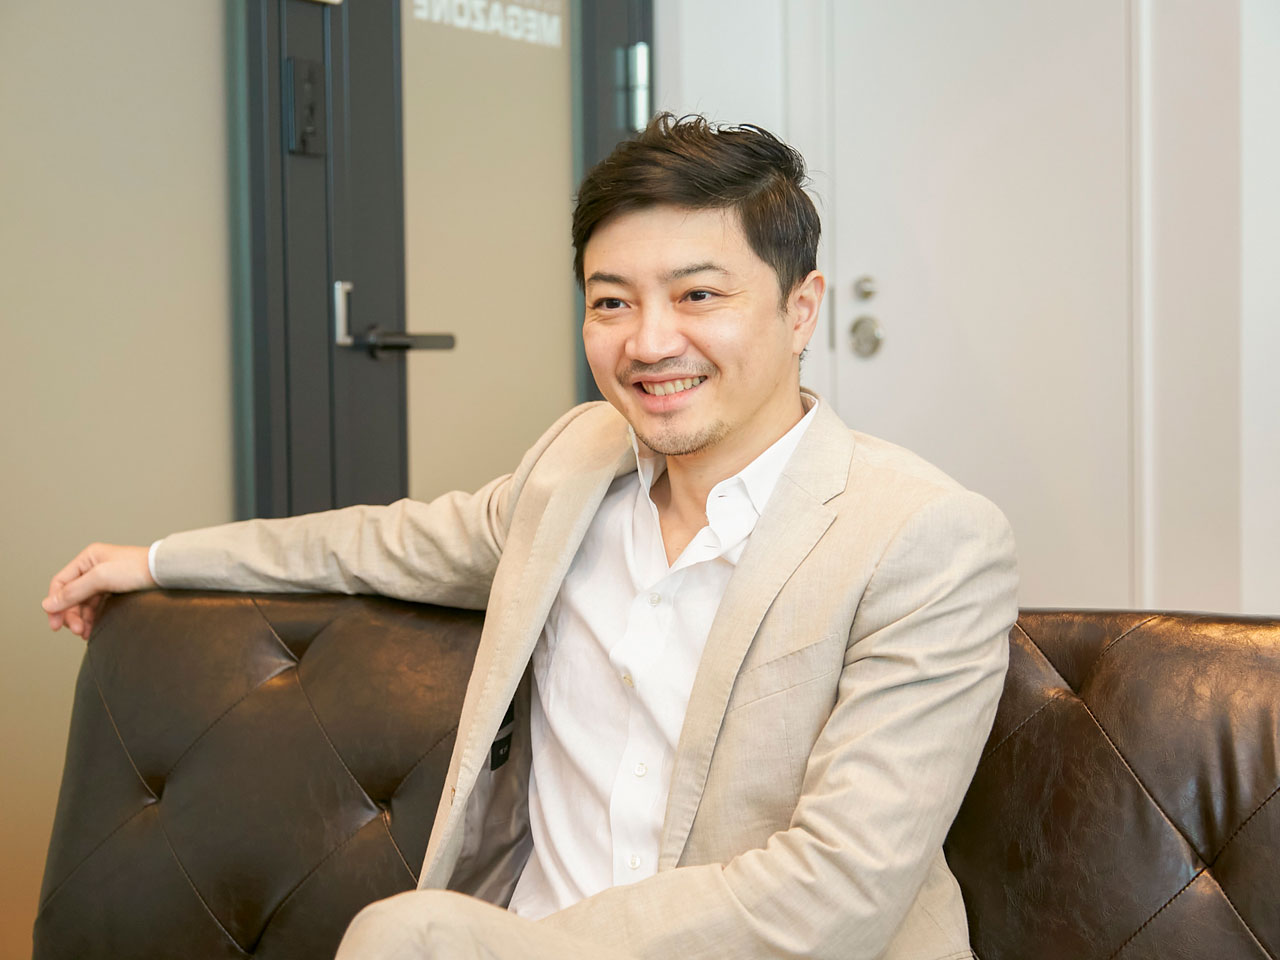 千葉　将樹
The head of the sales department
MEGAZONE CLOUDは、5,000社のクライアントを抱え、2021年の売上高は900億円。